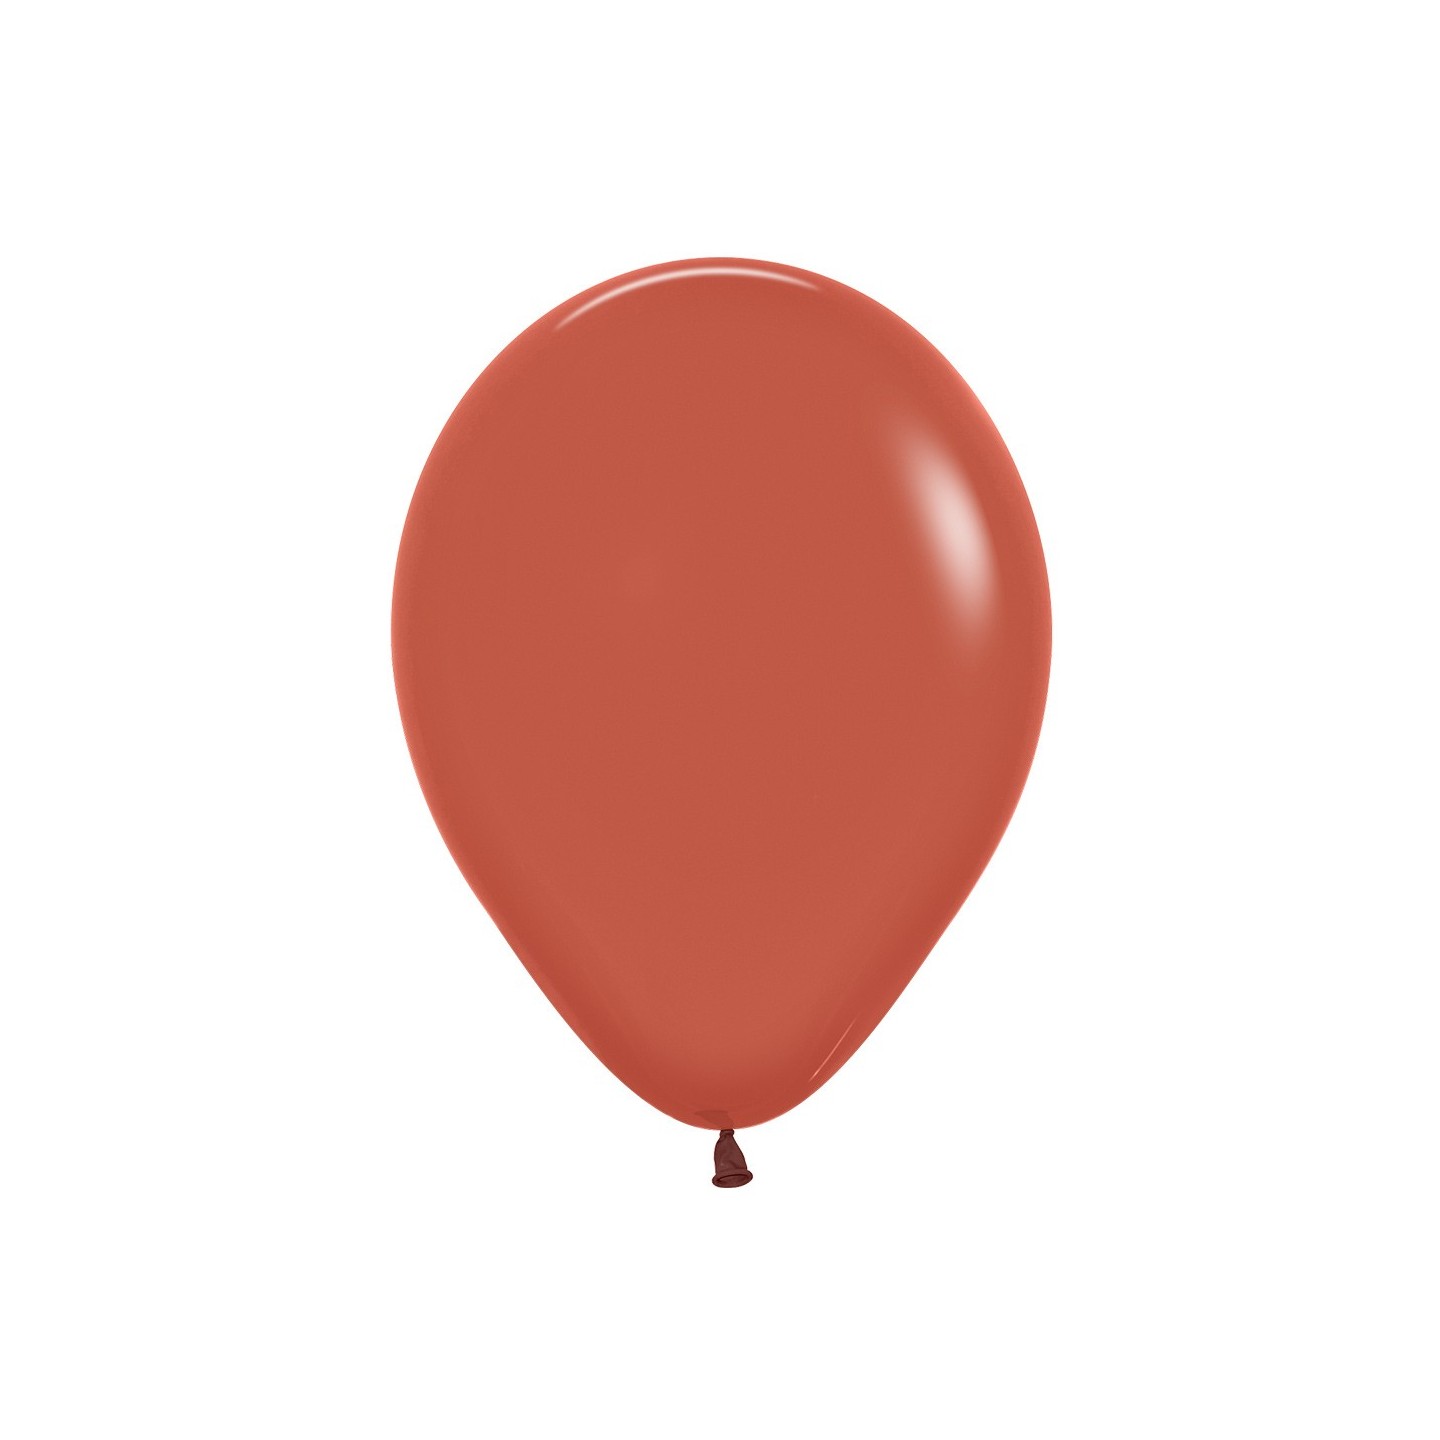 sempertex ballonnen terracotta bruin